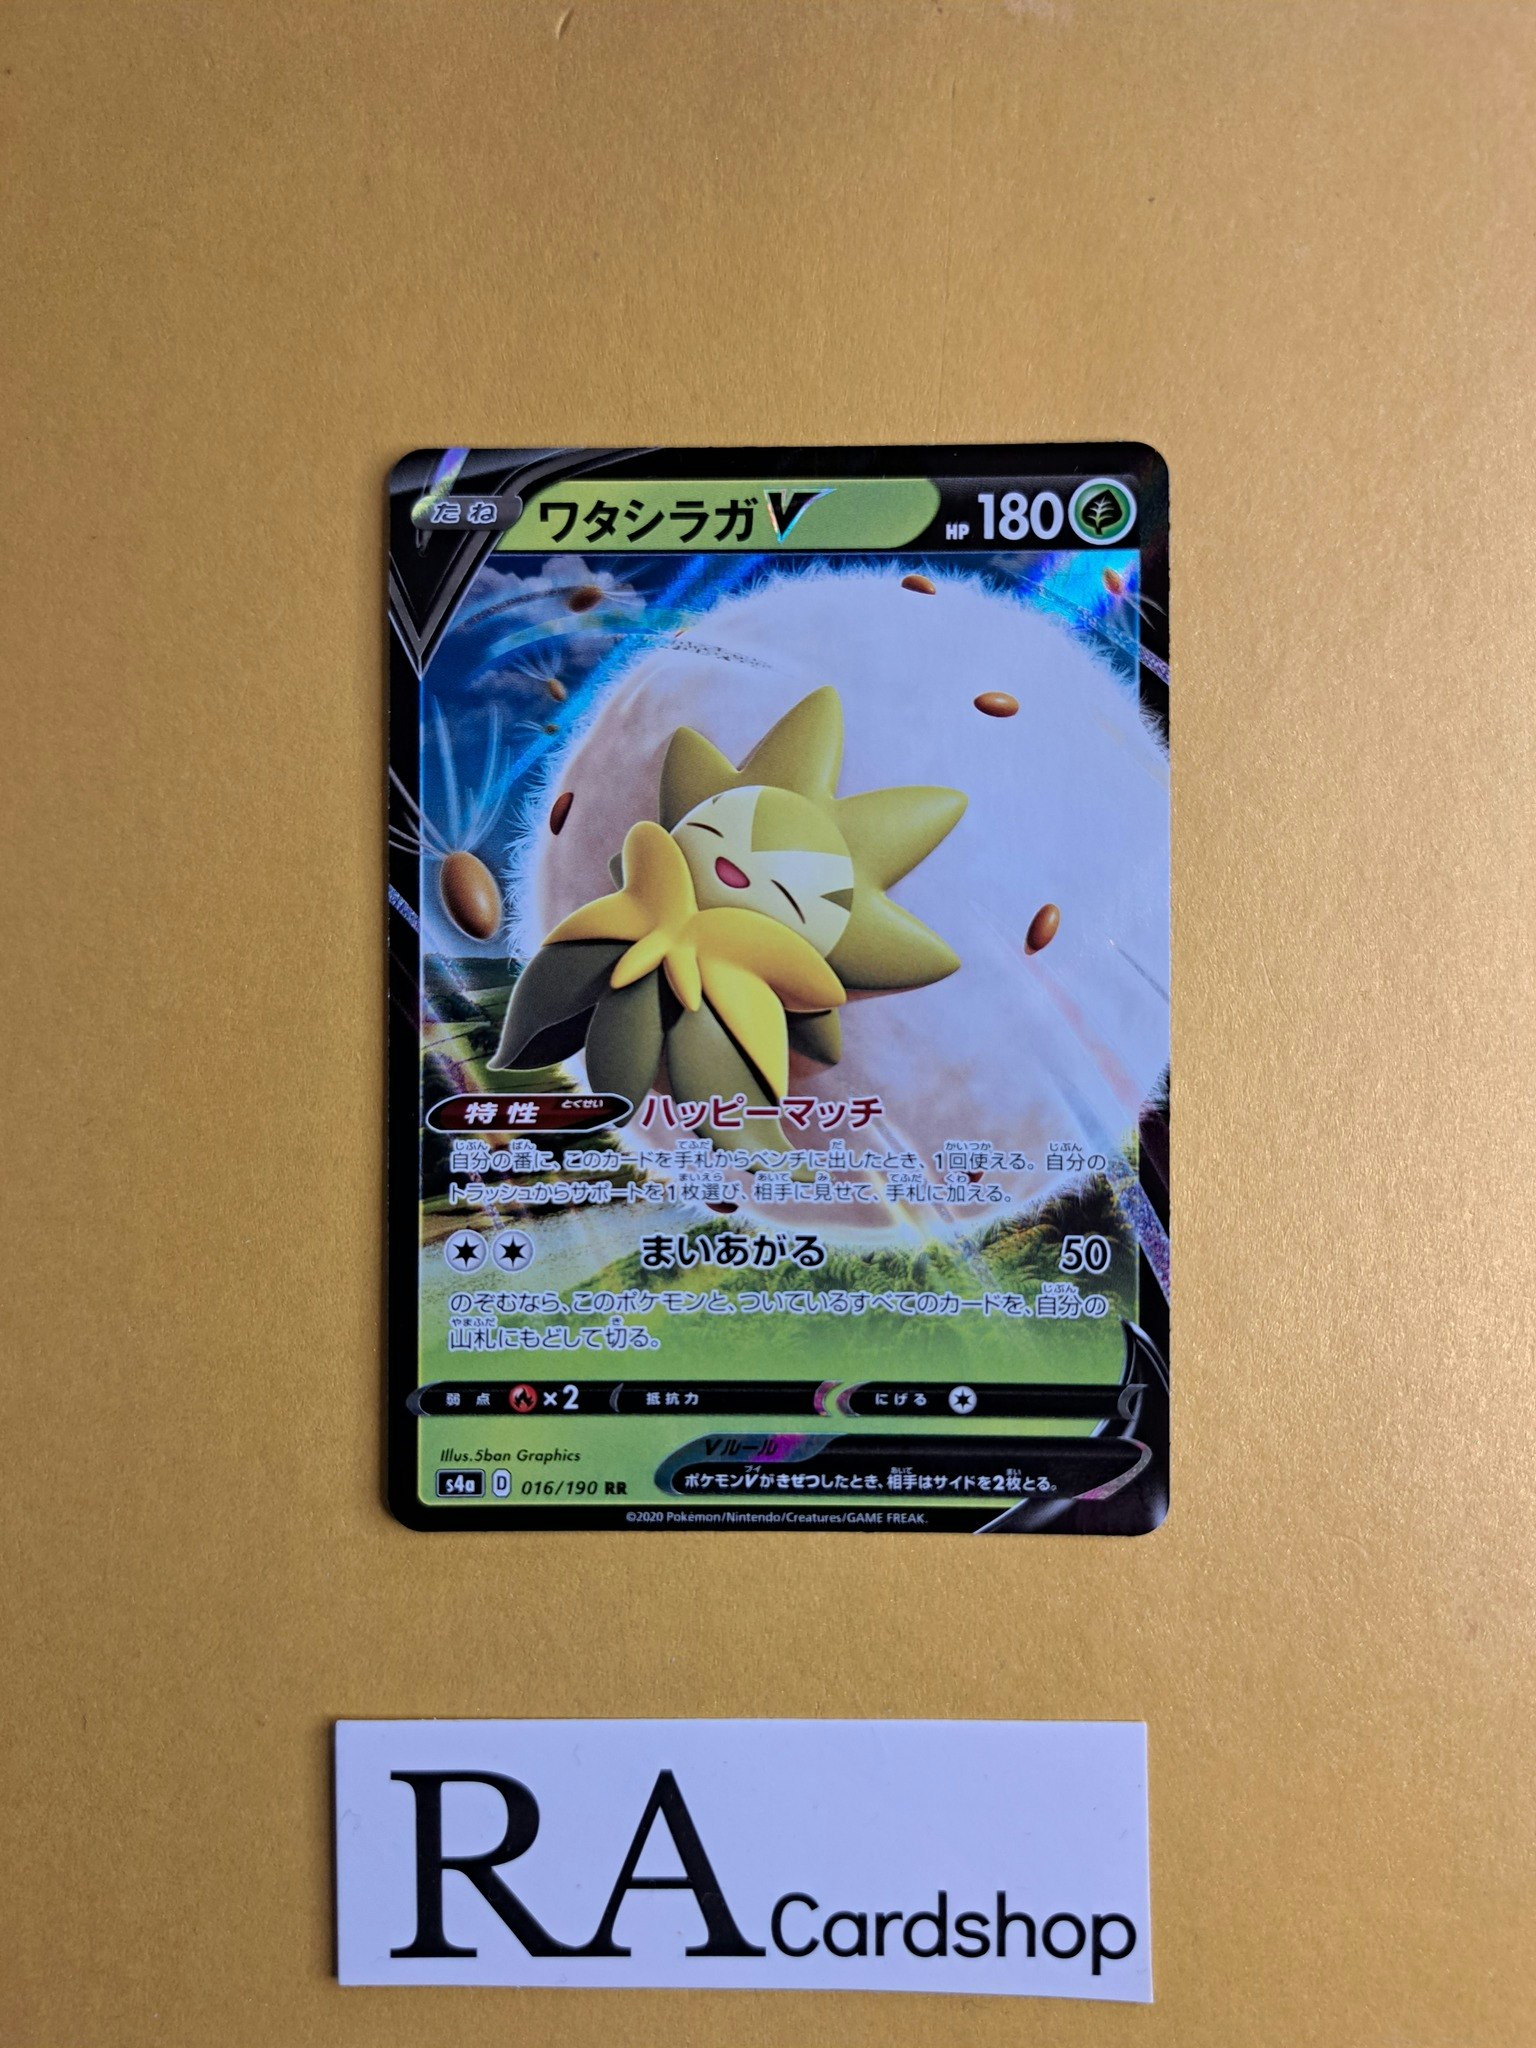 Eldegoss V 016/190 Shiny Star V s4a Pokemon